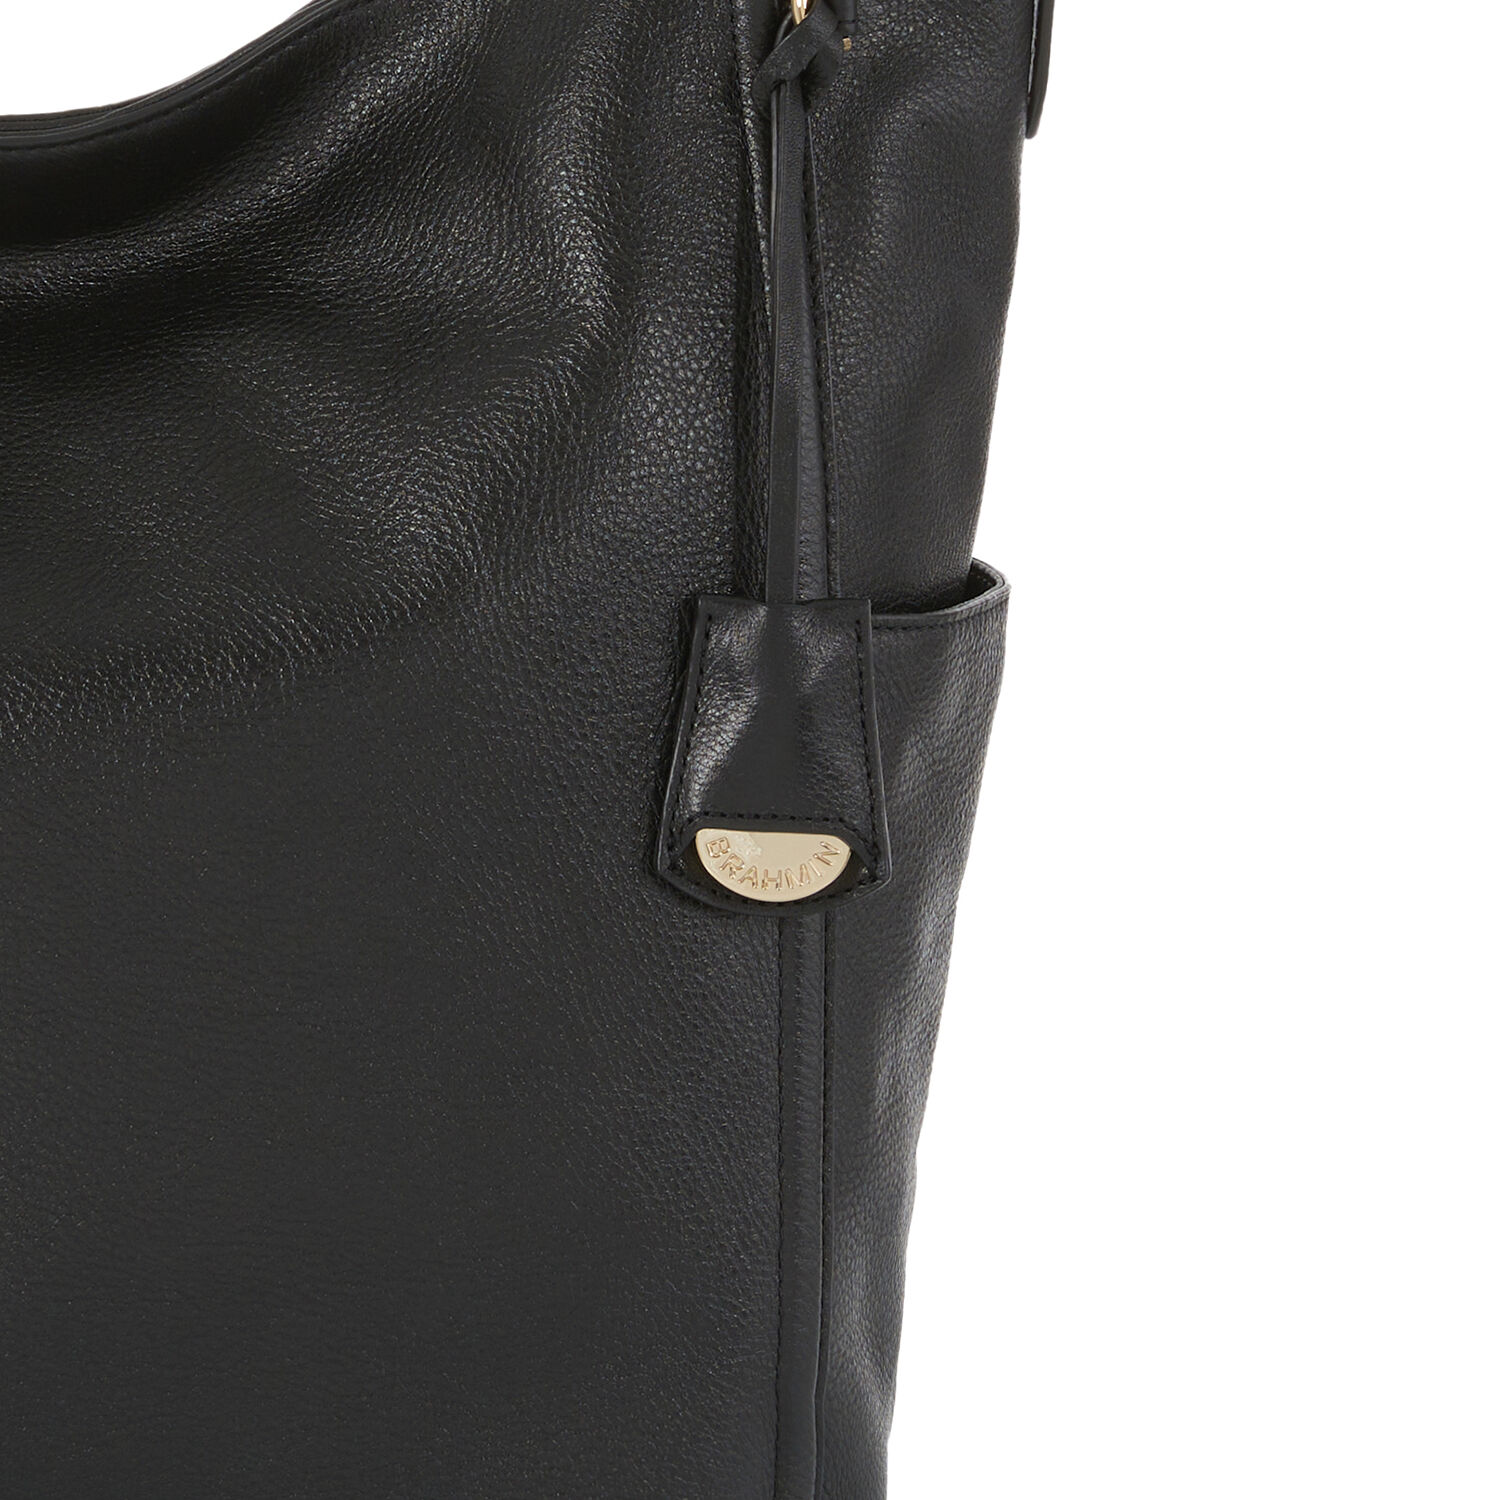 Parin Leather Shoulder Bag | Black Gryphon | BRAHMIN